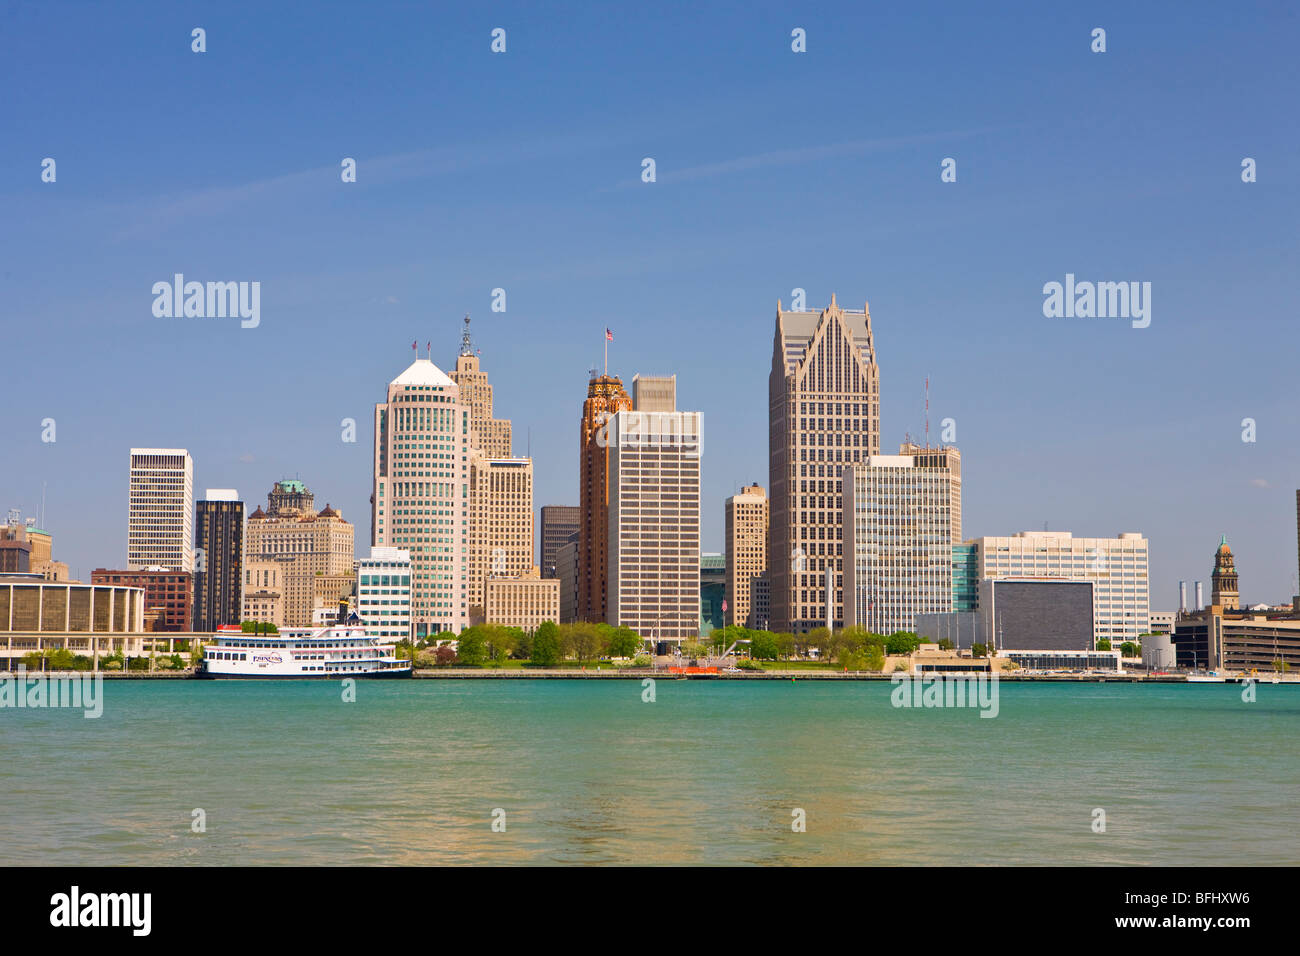 Les toits de la ville de Detroit sur la rivière Detroit dans le Michigan, USA vu de la ville de Windsor, Ontario, Canada Banque D'Images